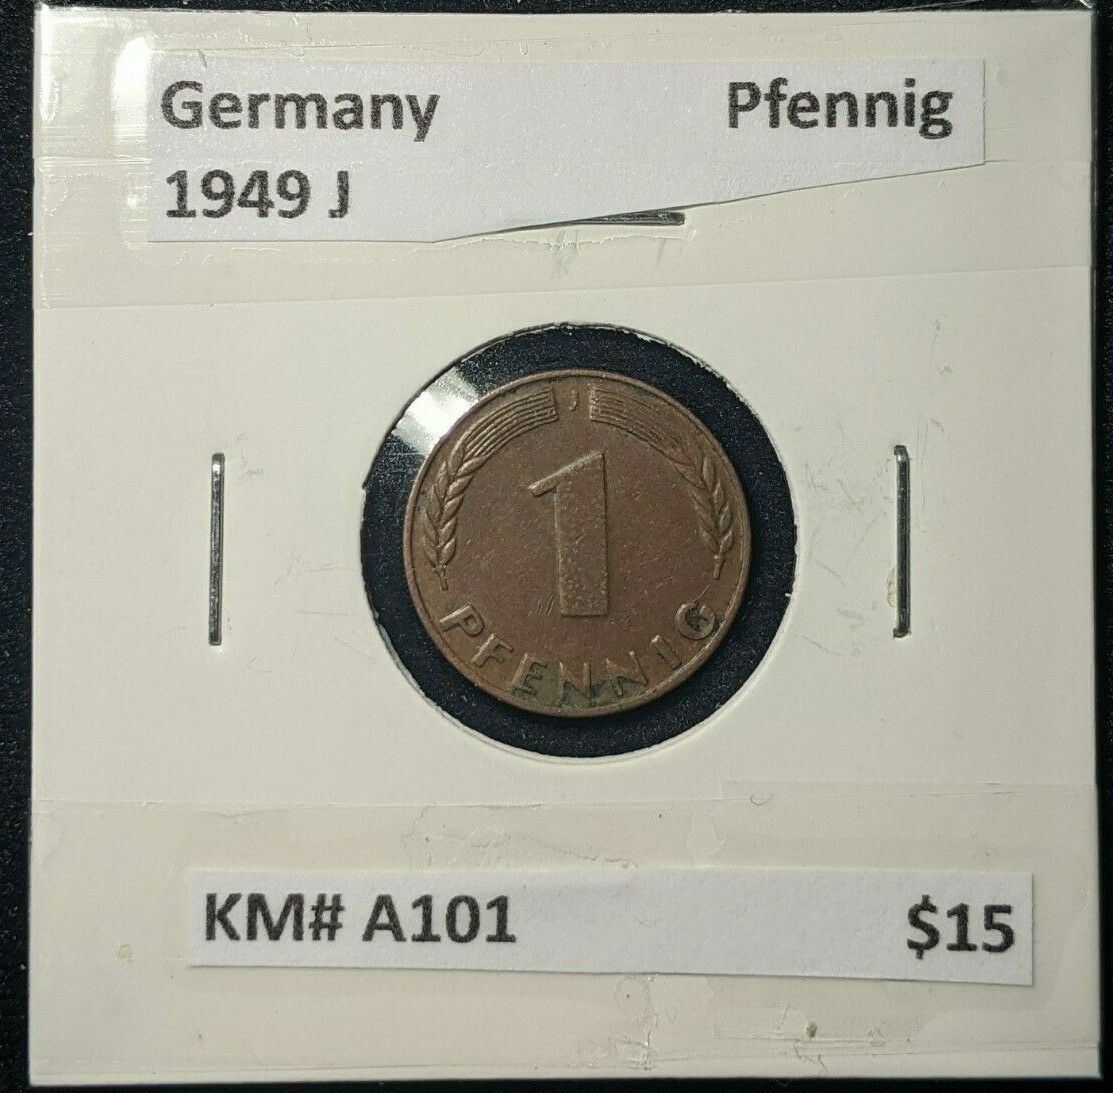 Germany 1949 J Pfennig KM# A101  #876  7B